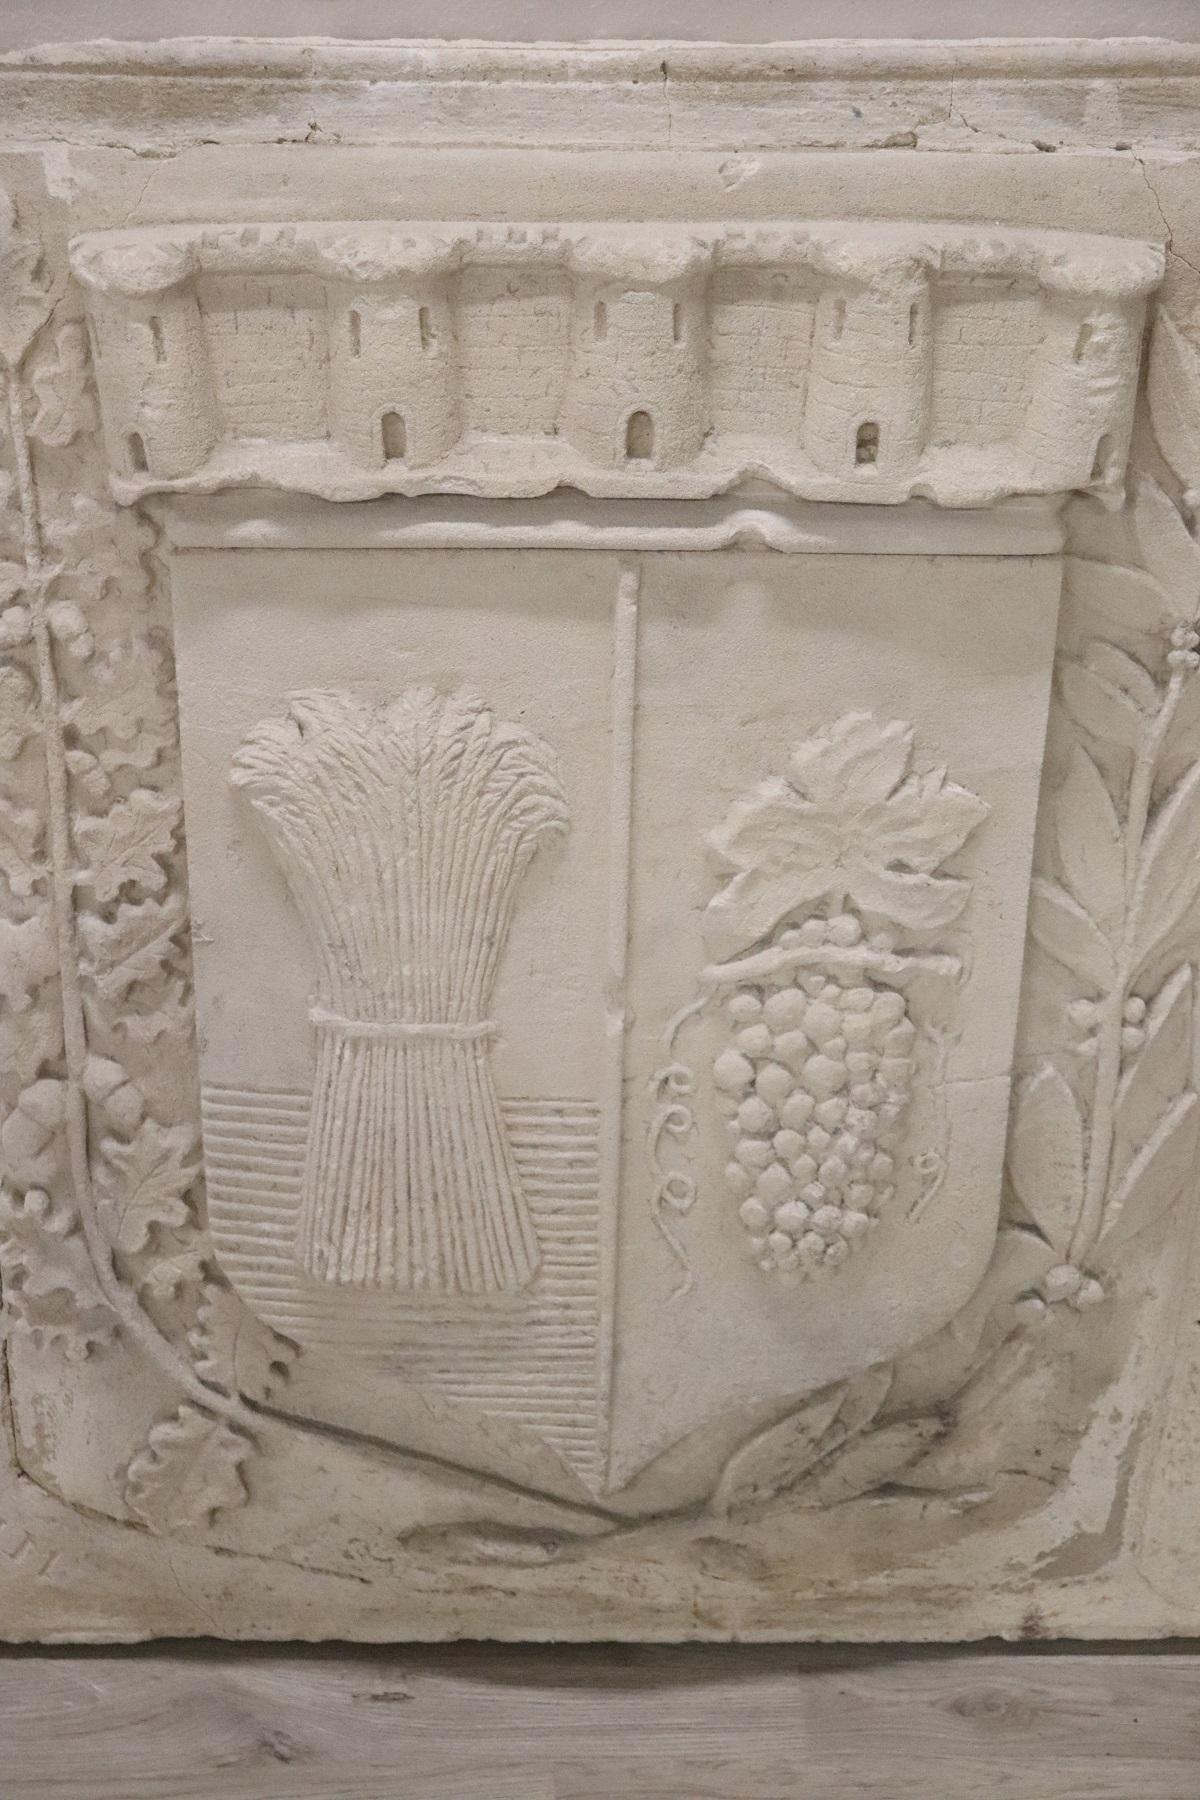 Antikes heraldisches Wappen aus Puzzolan. Puzzolan ist eine antike Zementart. Das Wappen ist sehr groß und stammt von einer Familie, die sich um die Landwirtschaft im Norden Italiens kümmerte. Im Wappen sind ein Weizenbündel und eine Weintraube auf